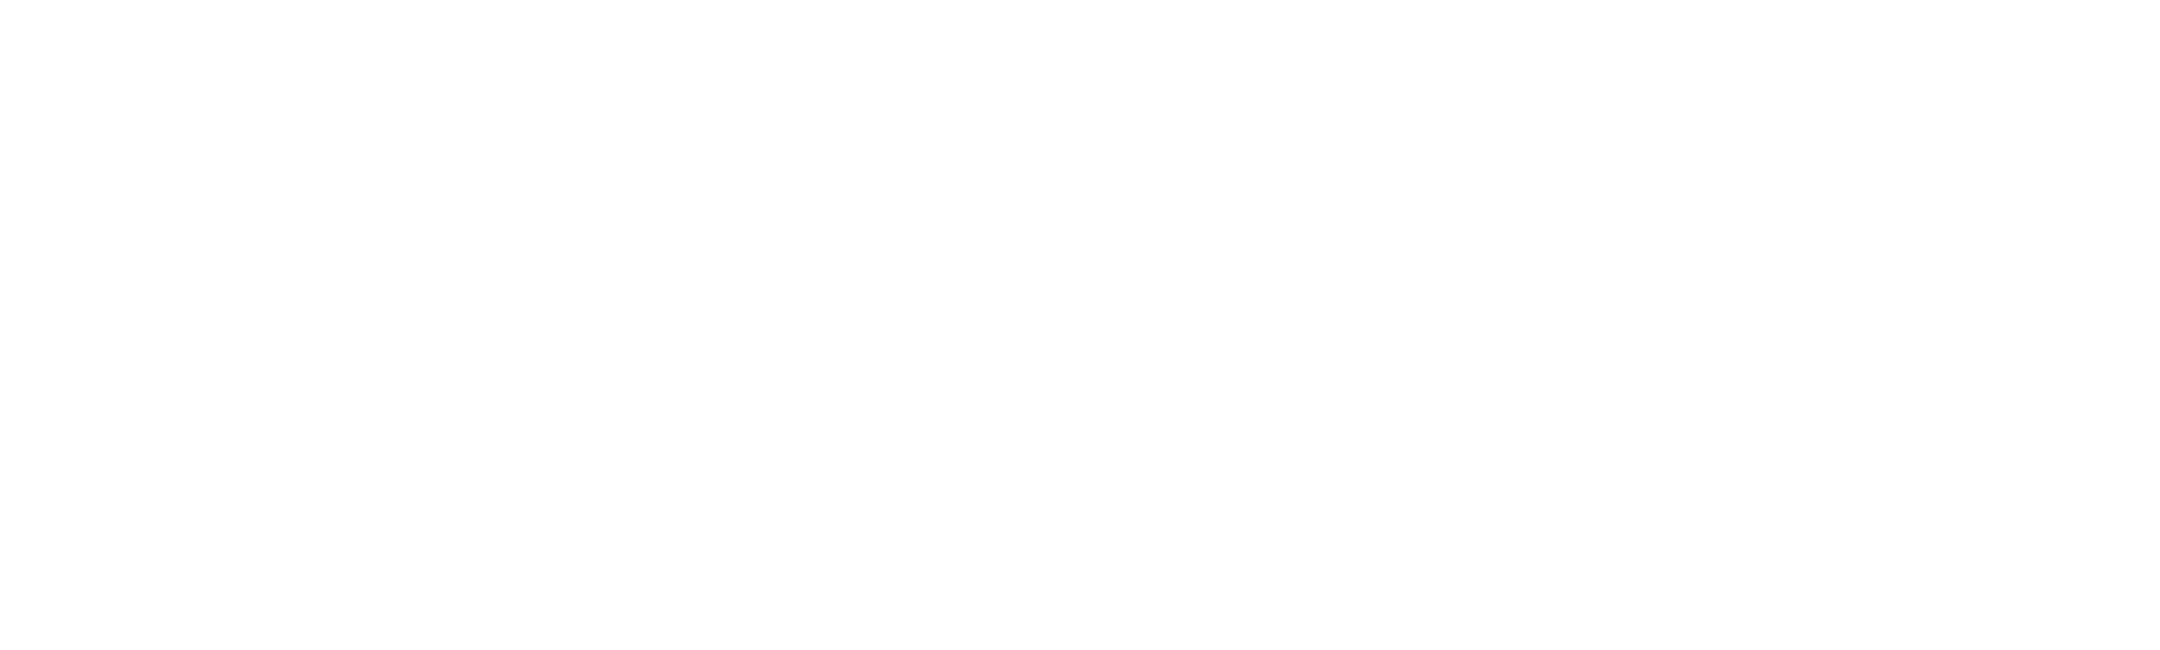 פתרונות שער תשלום במטבע קריפטו - FSFPAY.com